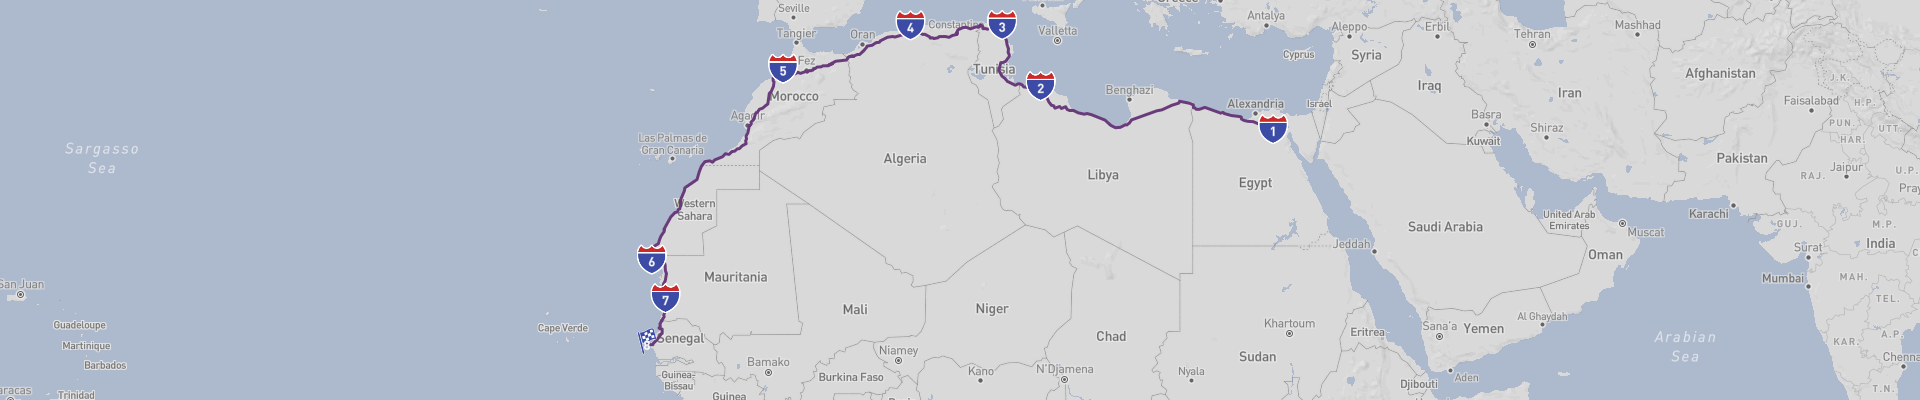 カイロ〜ダカール アフリカ横断ロードの旅